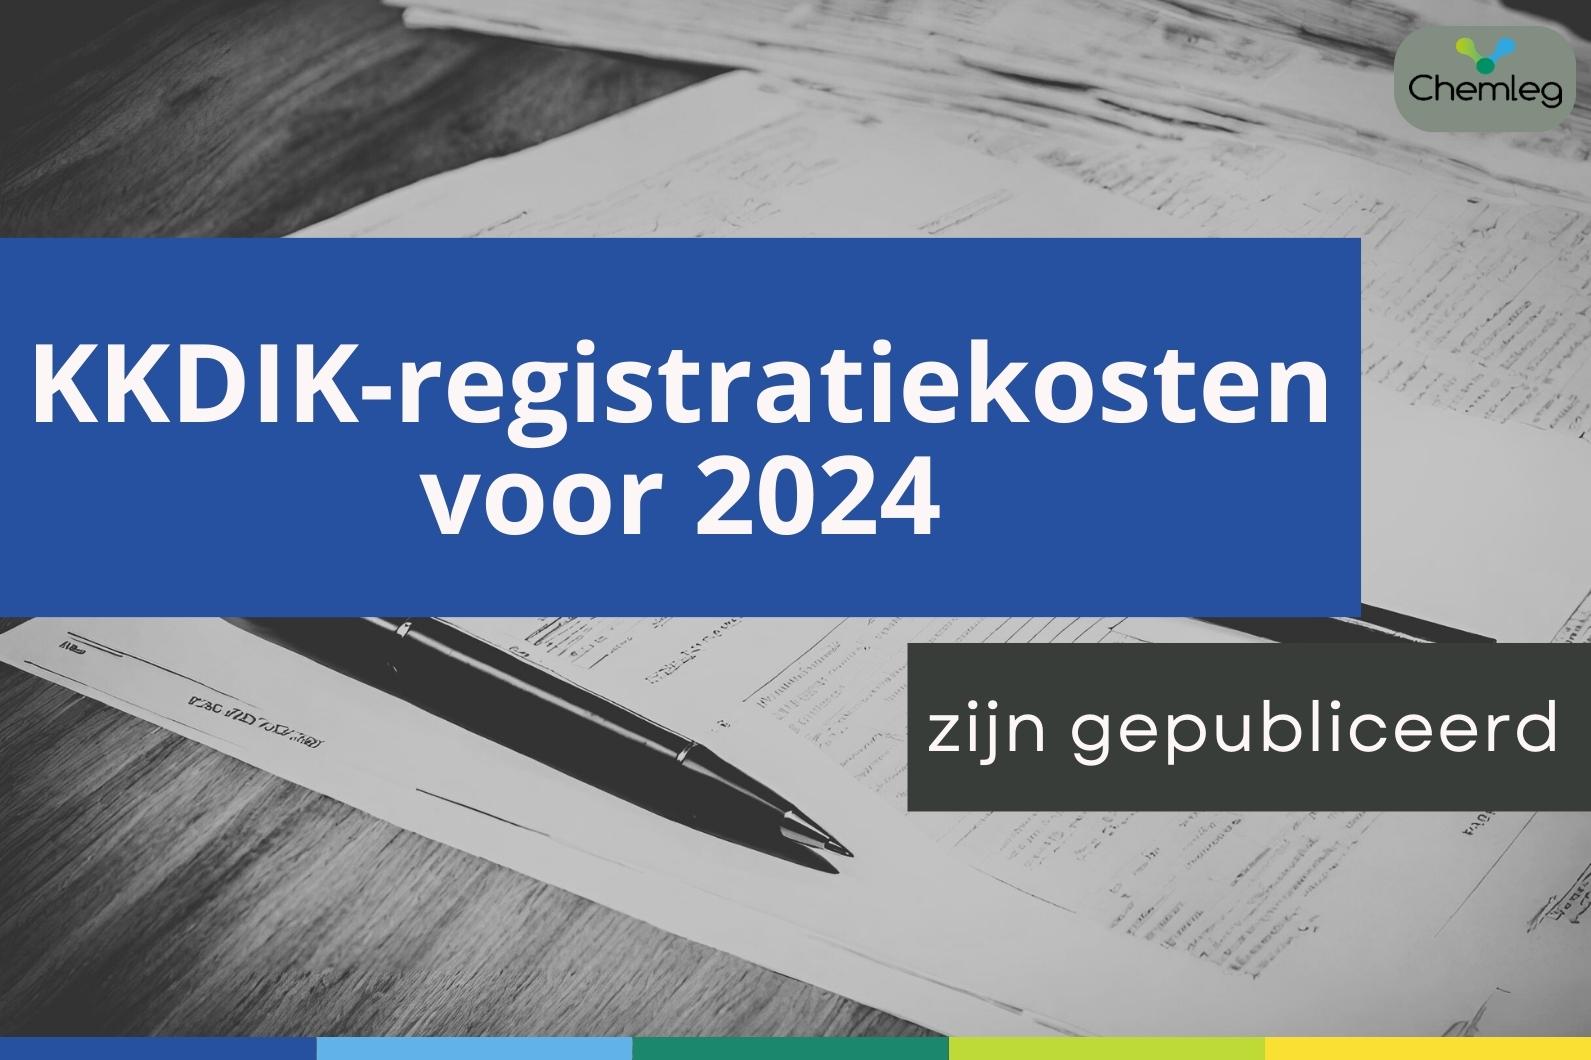 KKDIK-registratiekosten voor 2024 zijn gepubliceerd